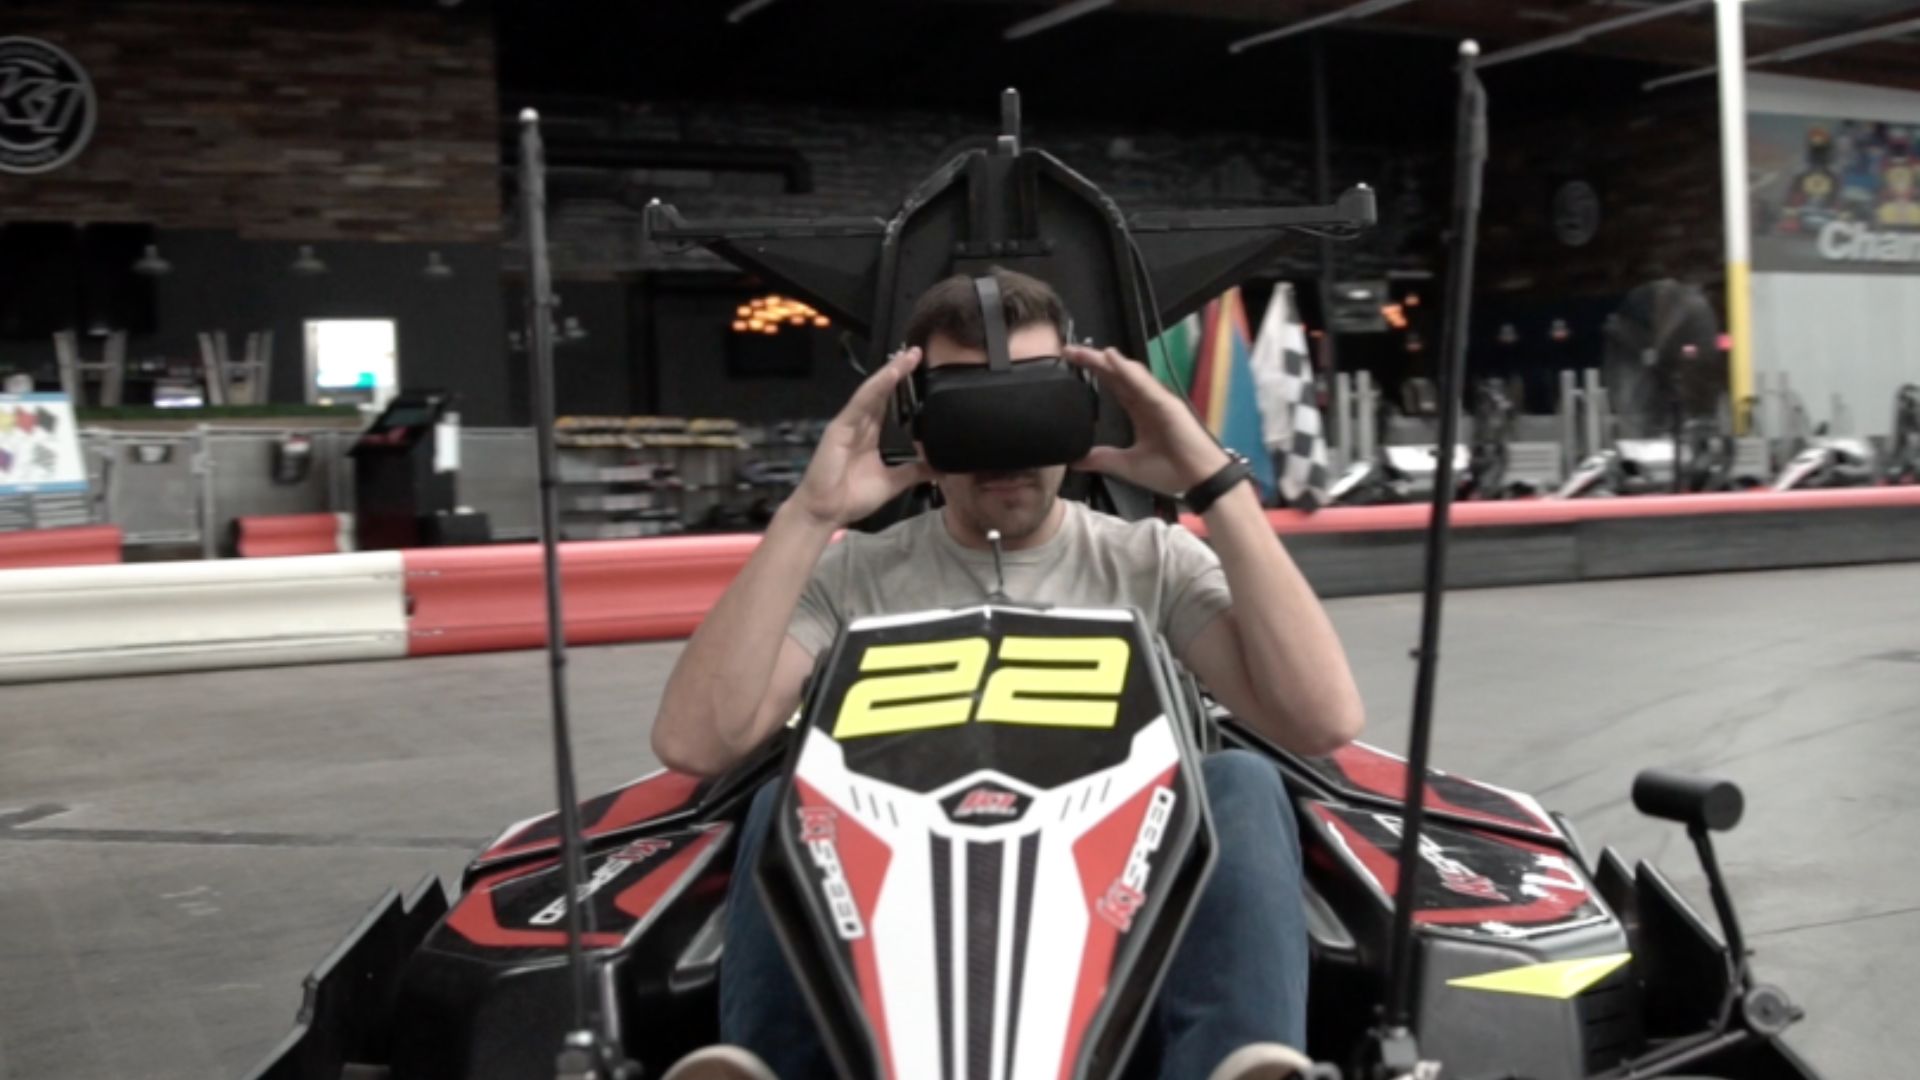 a kart racers integrating VR